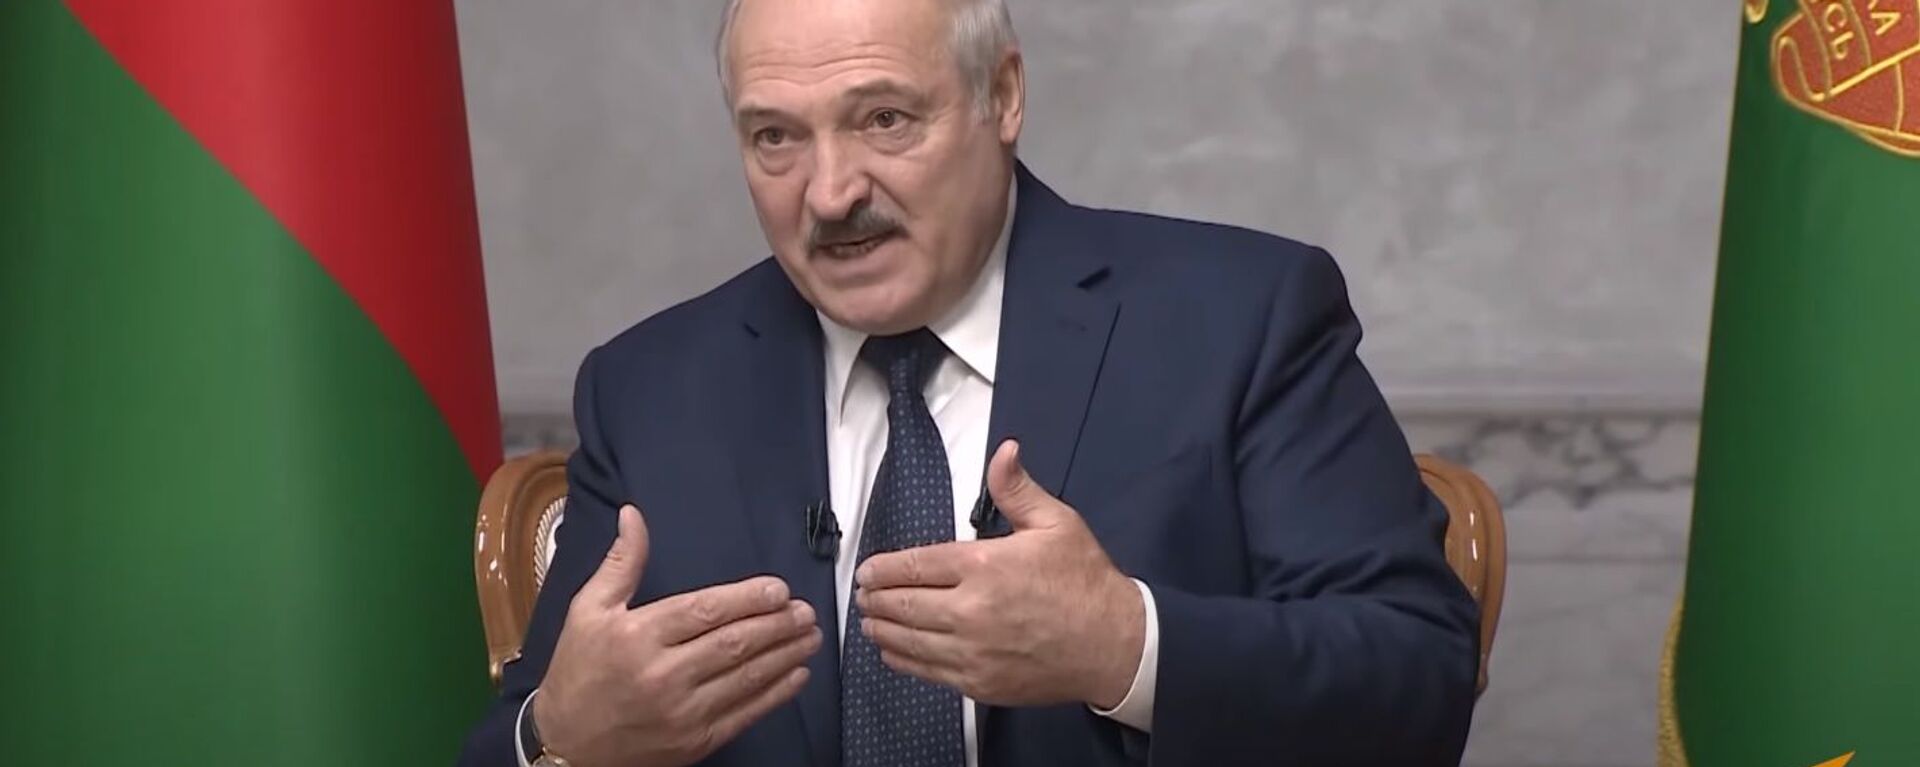 Немного пересидел: Лукашенко дал большое интервью российским журналистам - Sputnik Узбекистан, 1920, 09.09.2020